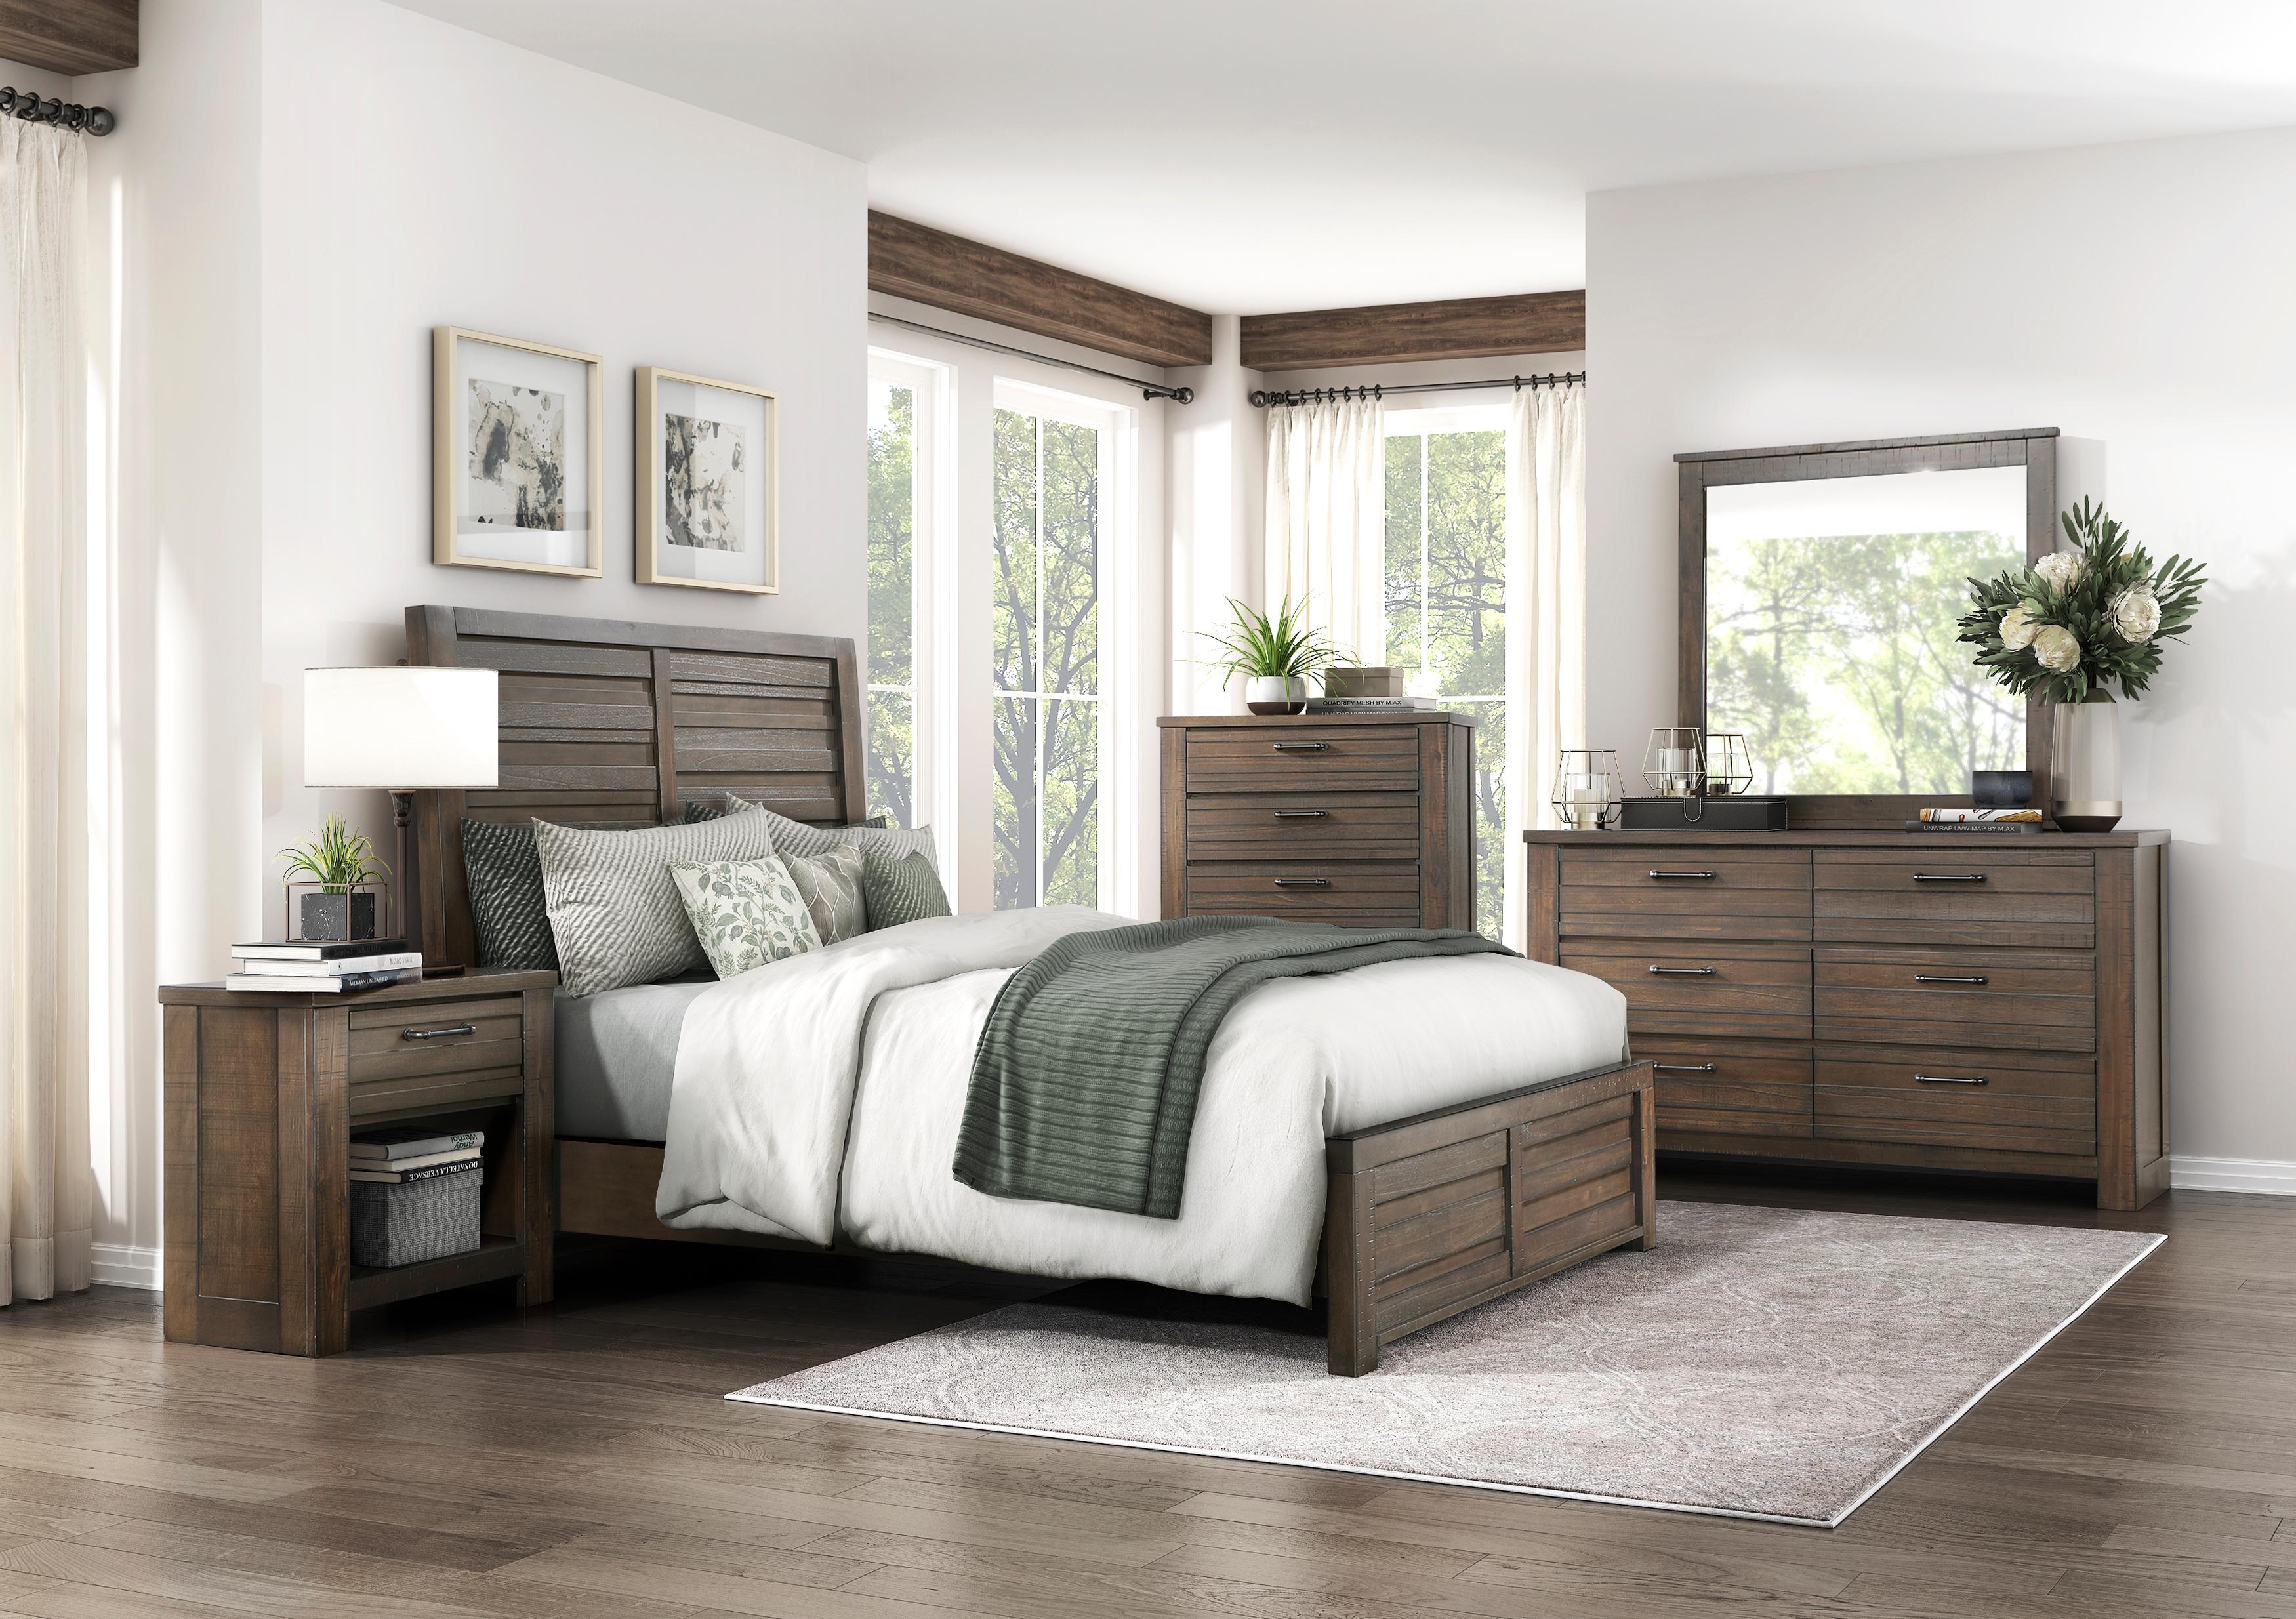 

    
Rustic Dark Brown Wood California King Panel Bedroom Set 5PCS Homelegance Longview 1498DBK-1CK-5PCS
